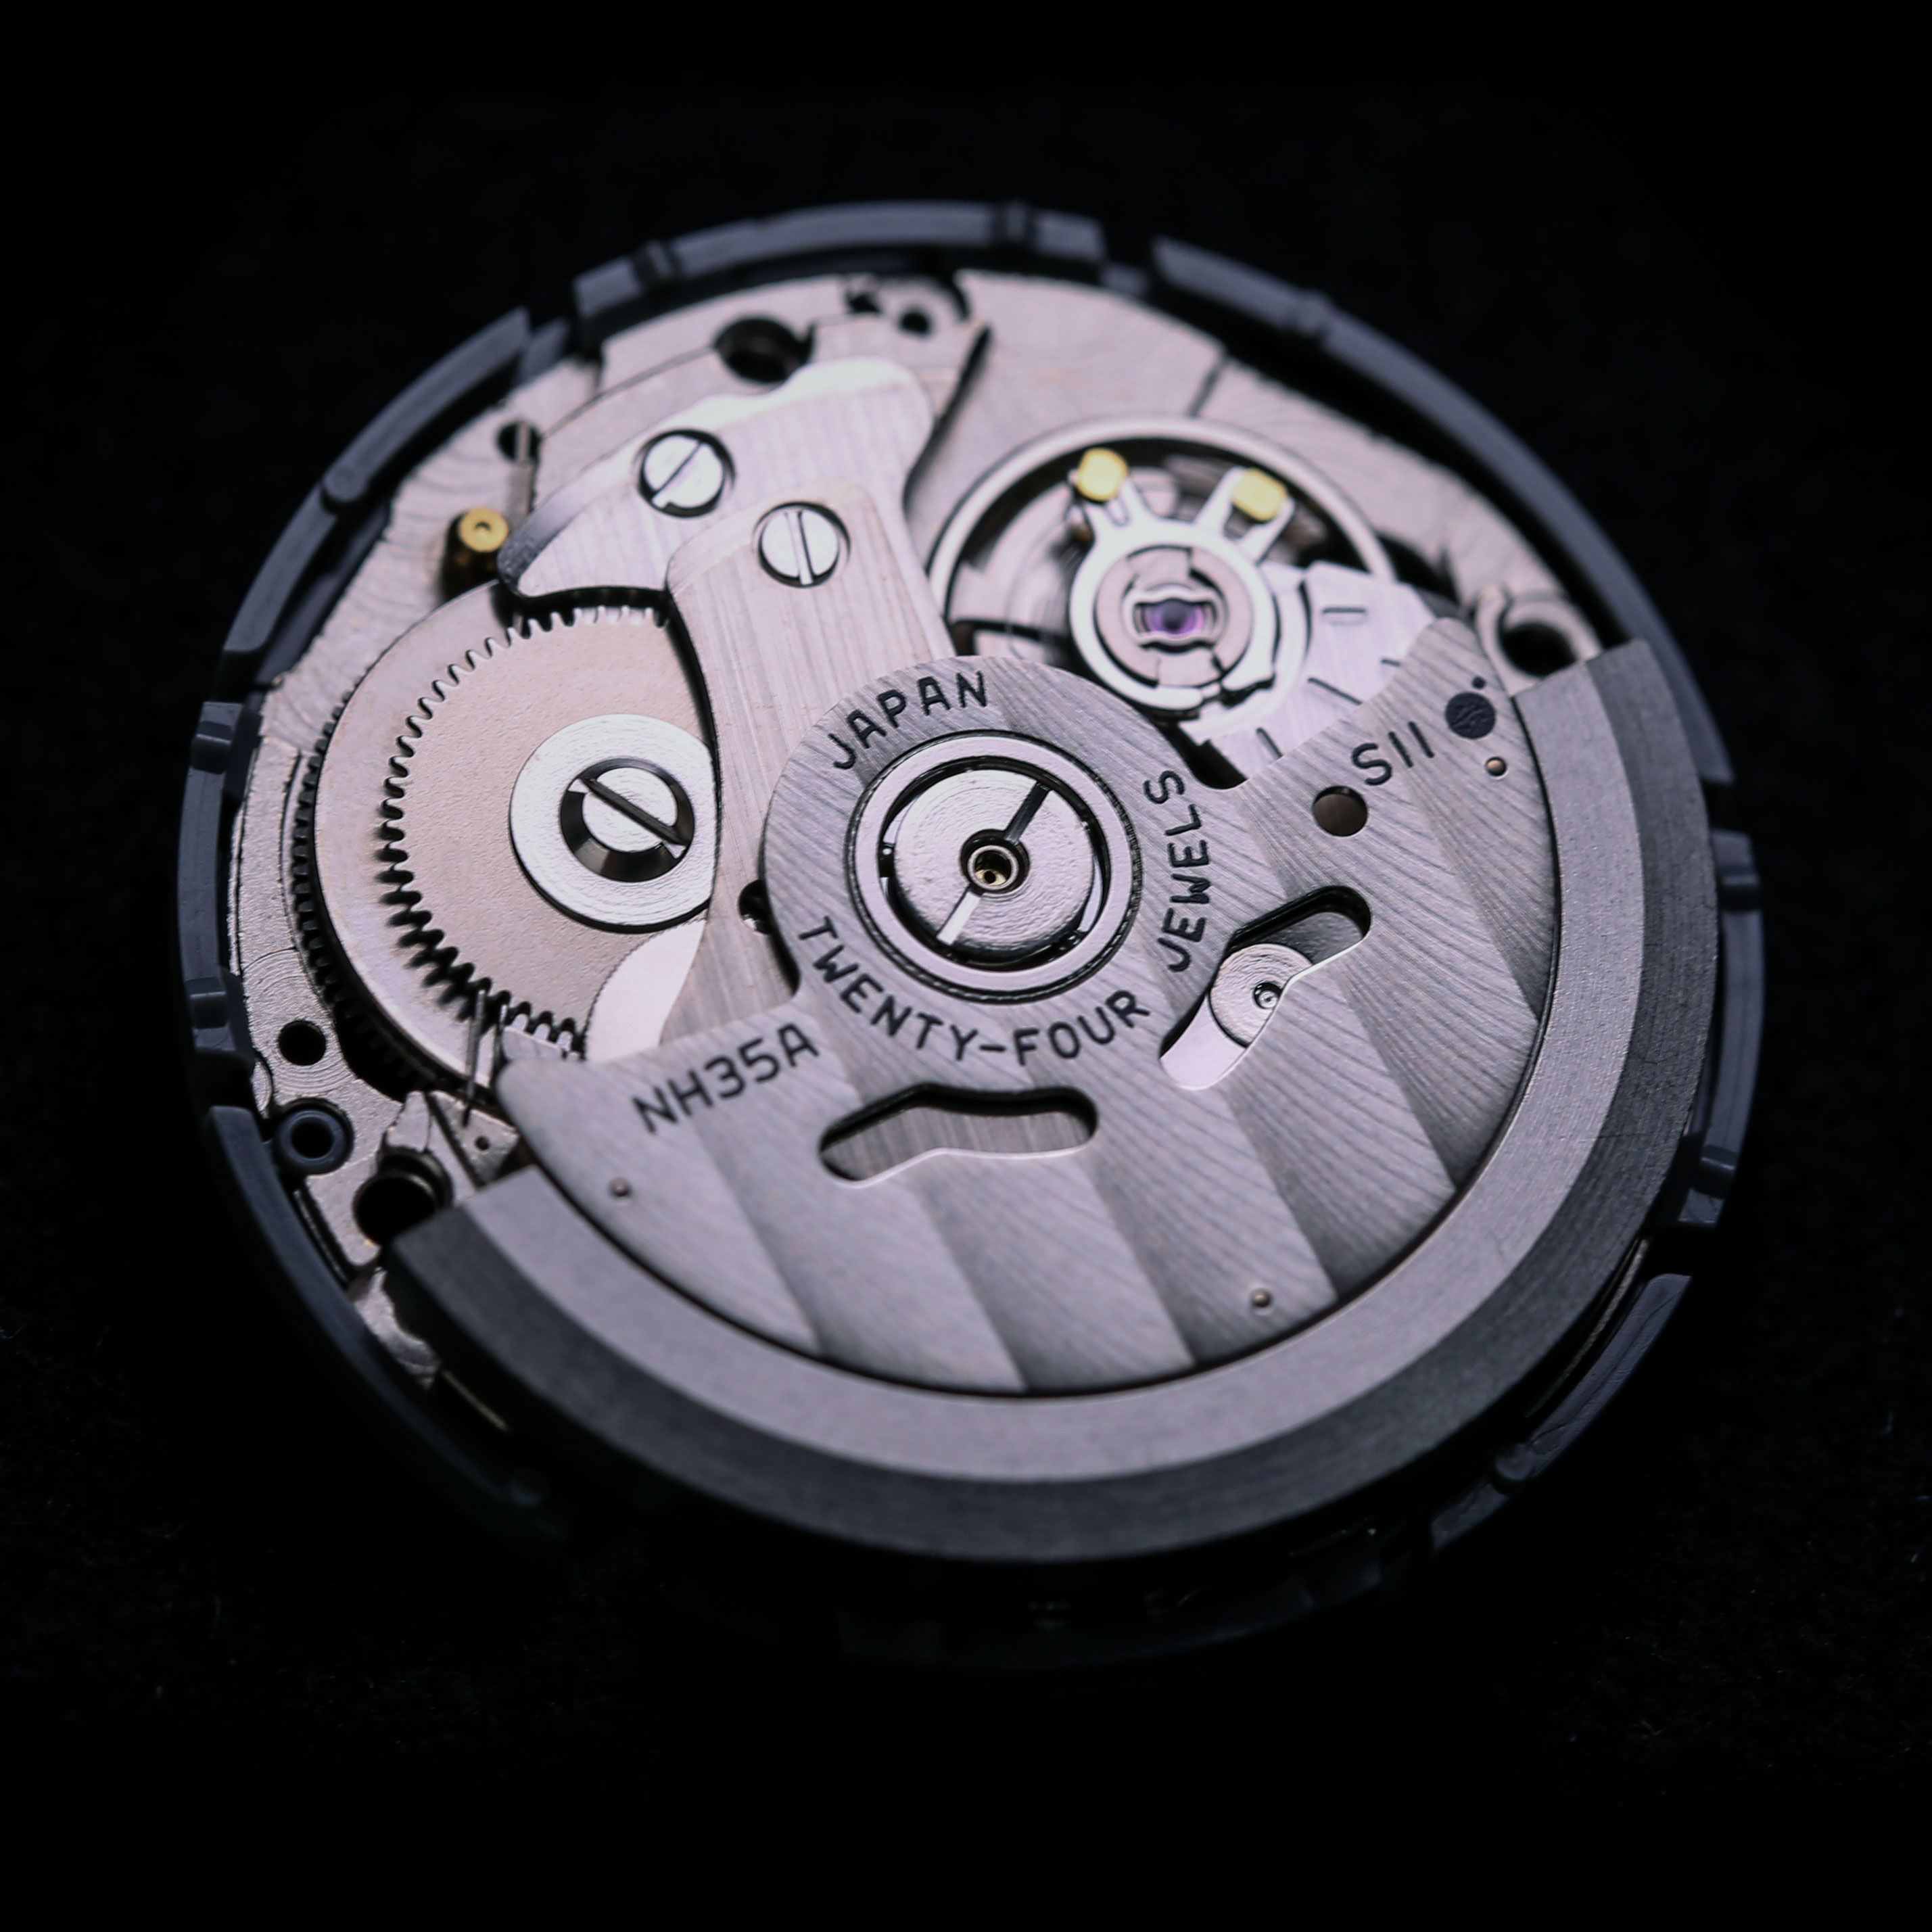 ロレックス等を修理していた技師が始めた「カスタマイズ腕時計」がついに日本本格展開！ 時計業界に新たな可能性を見出すUNDONEの挑戦